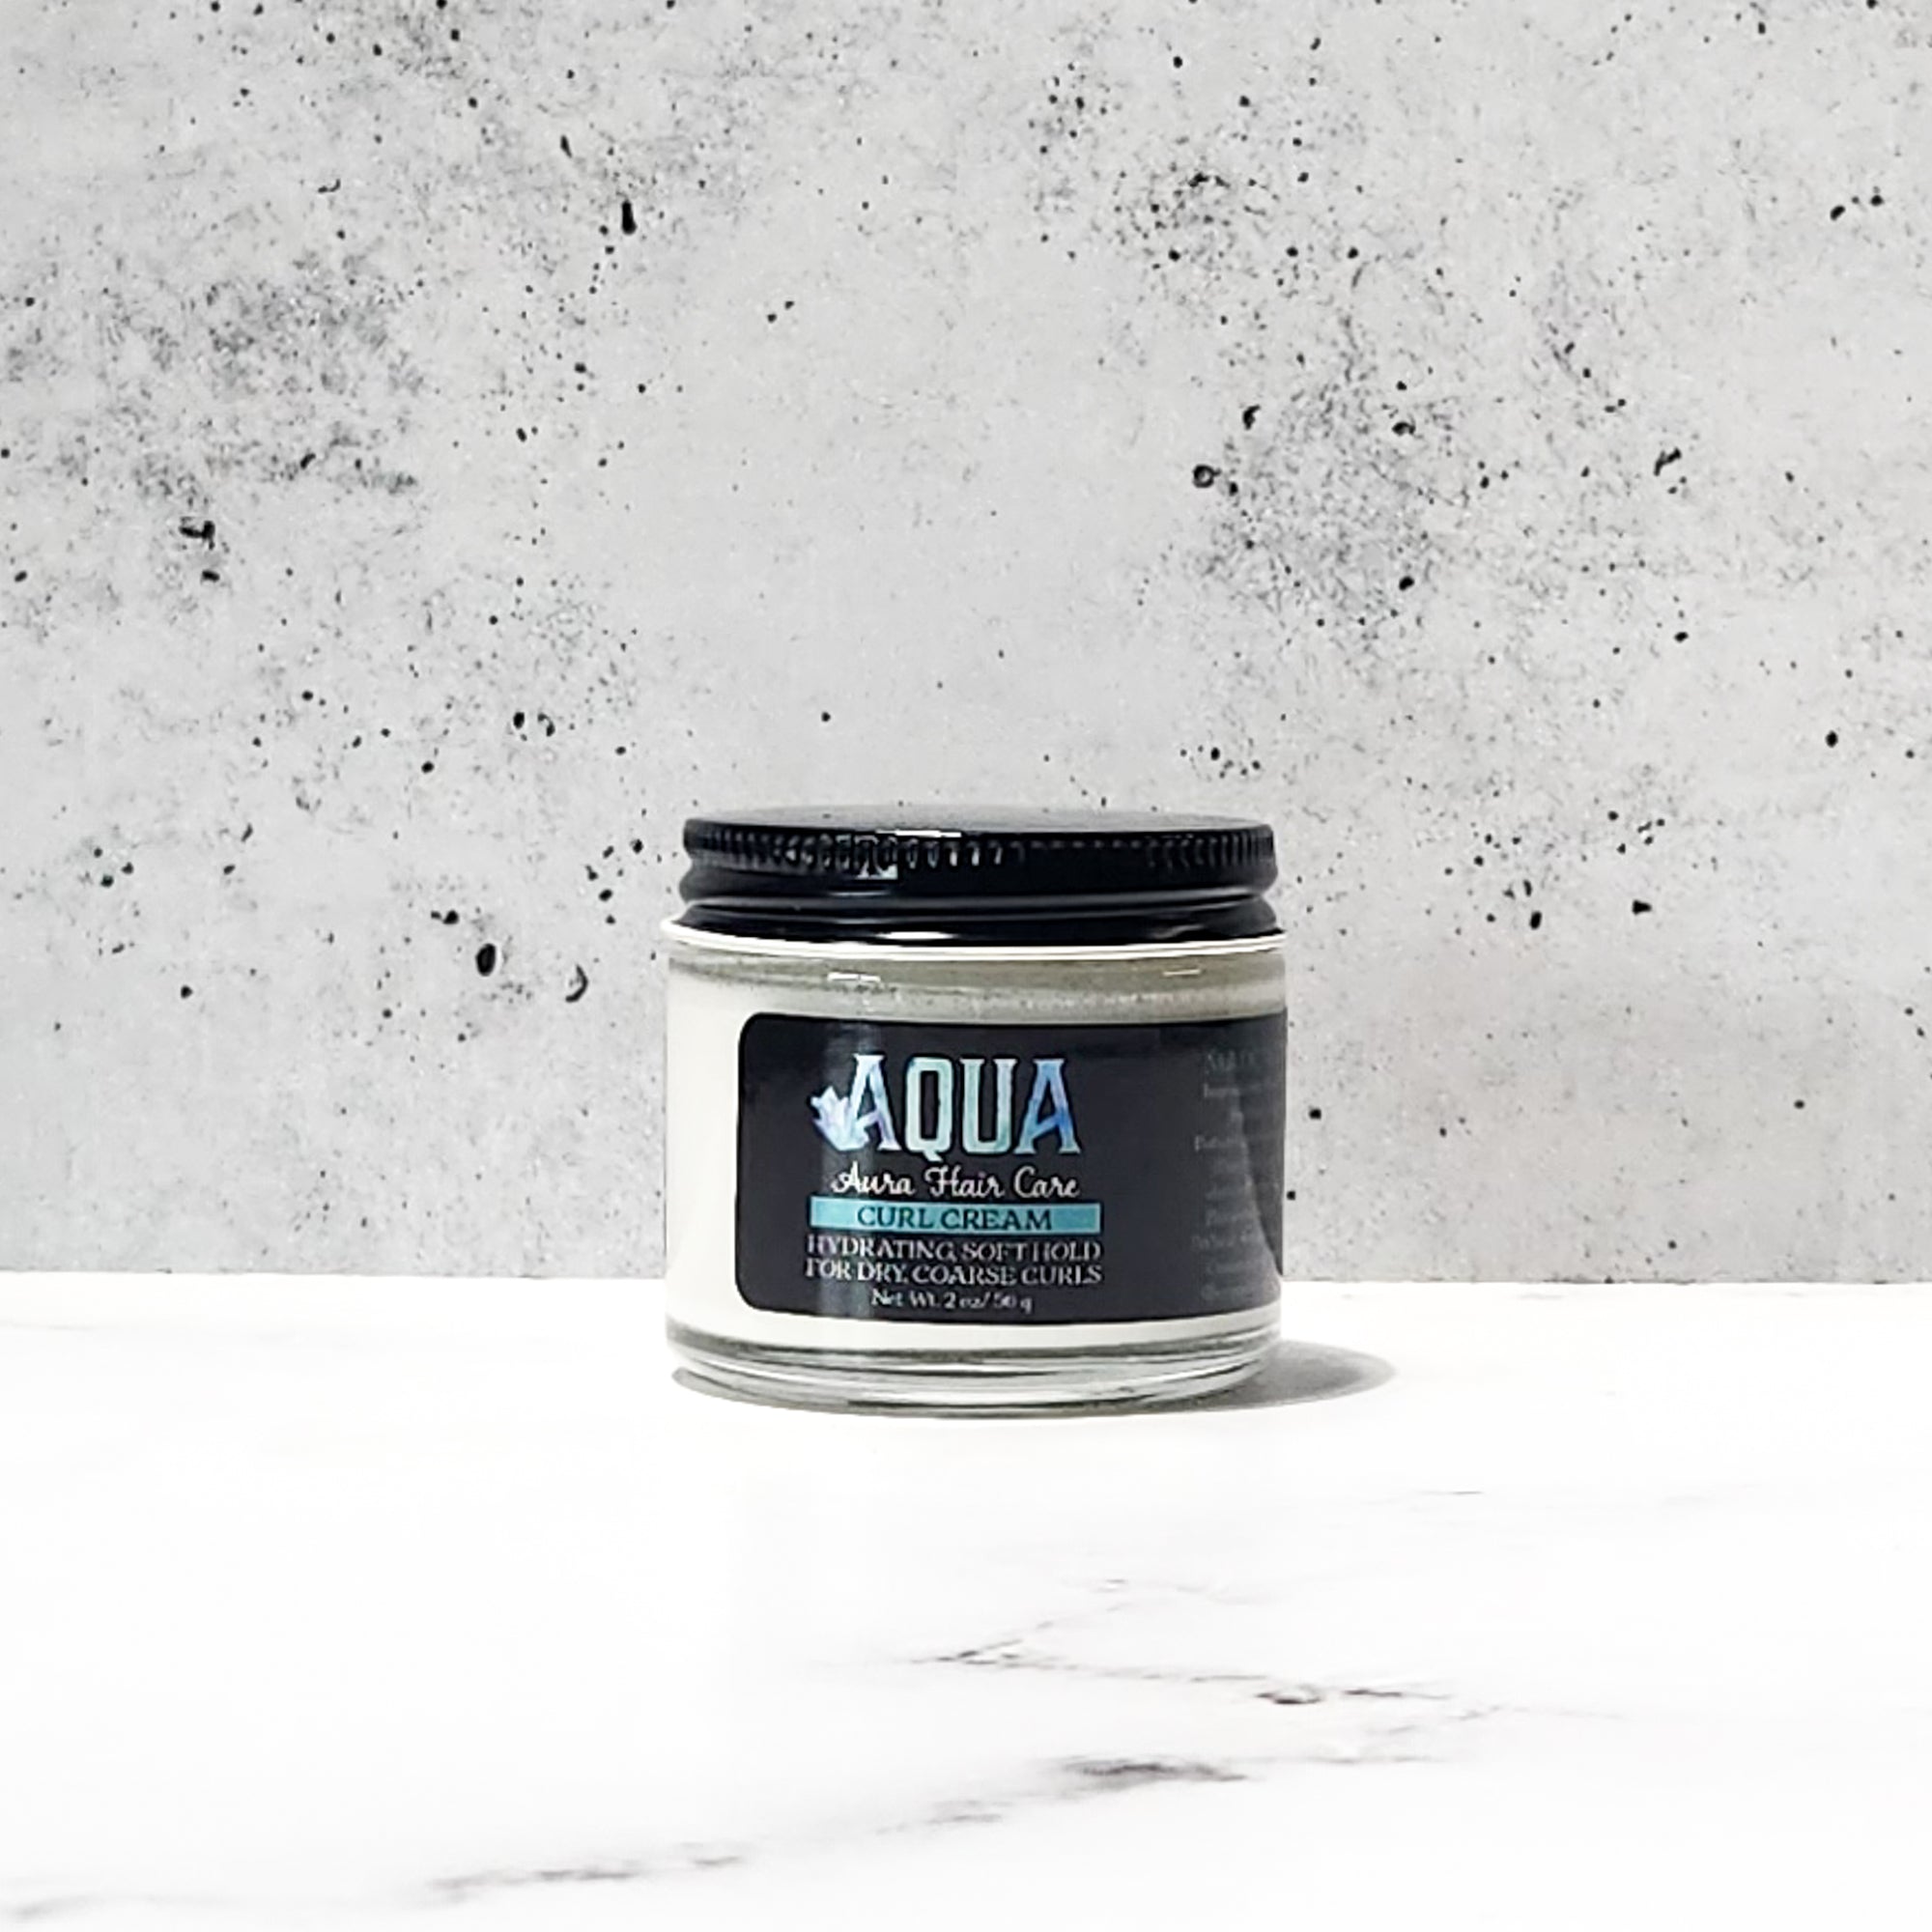 Aqua Aura Curl Cream Travel Size